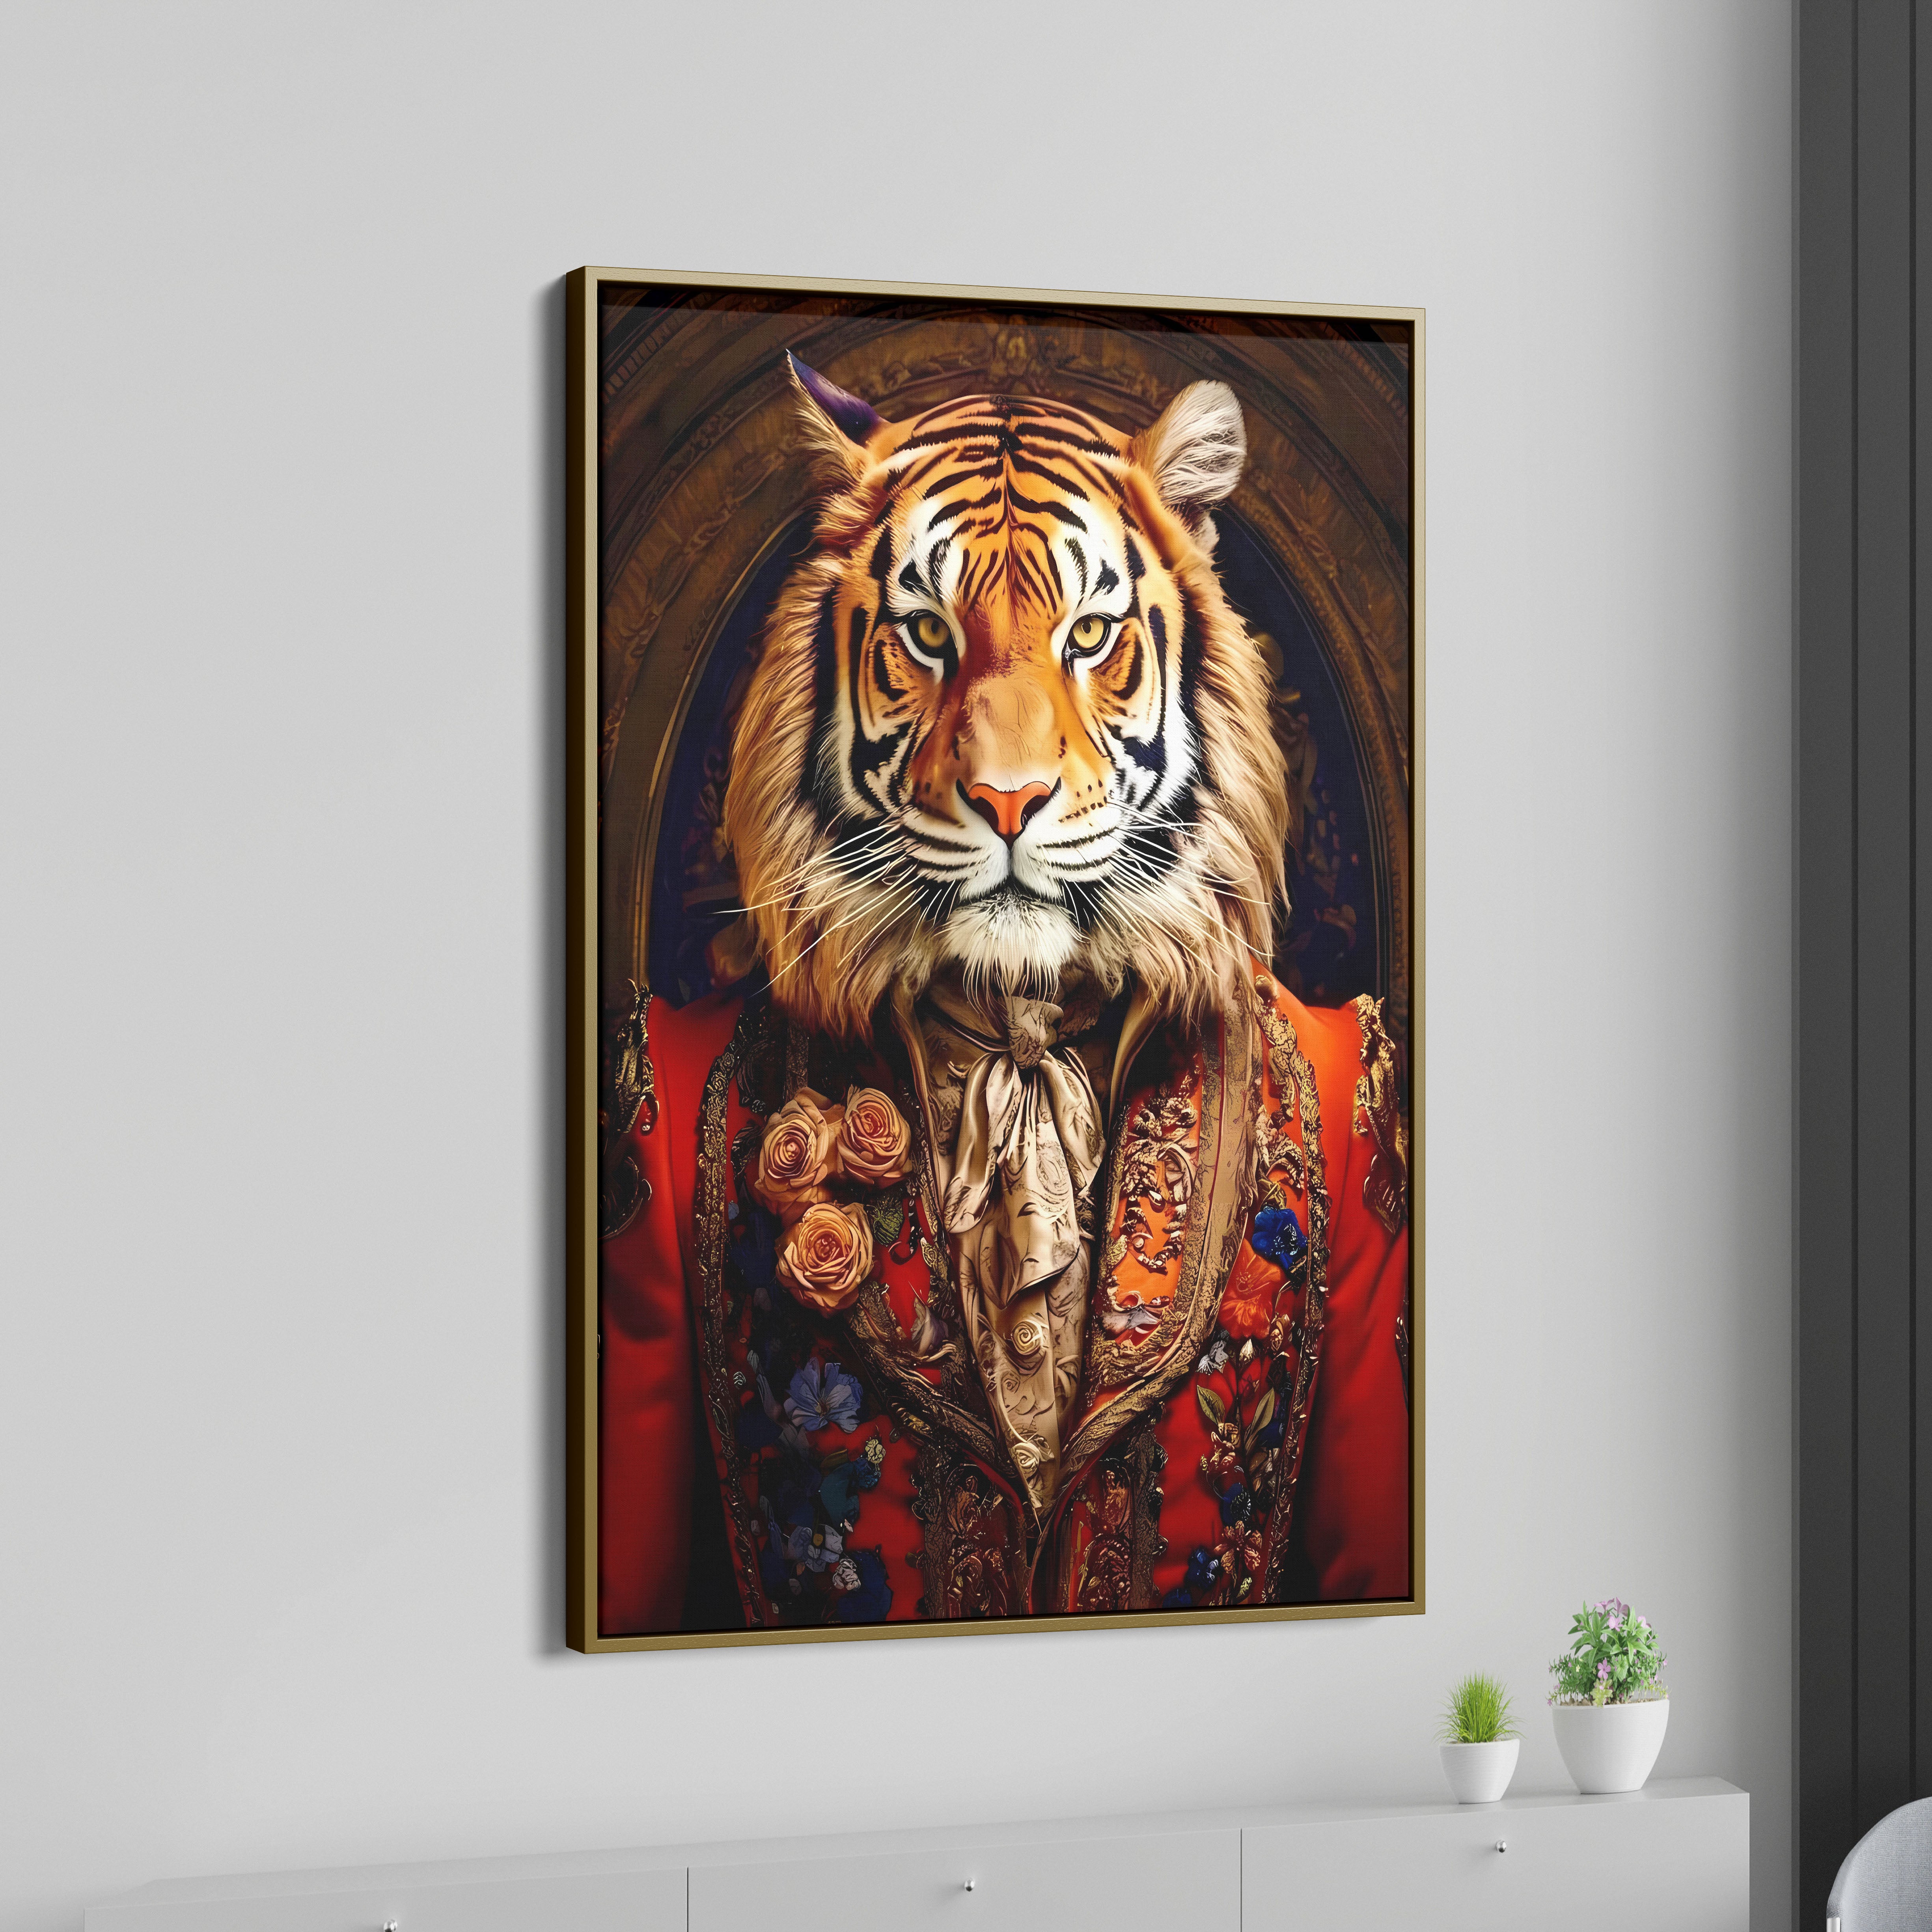 Tiger Royal Renaissance Canvas Wall Painting